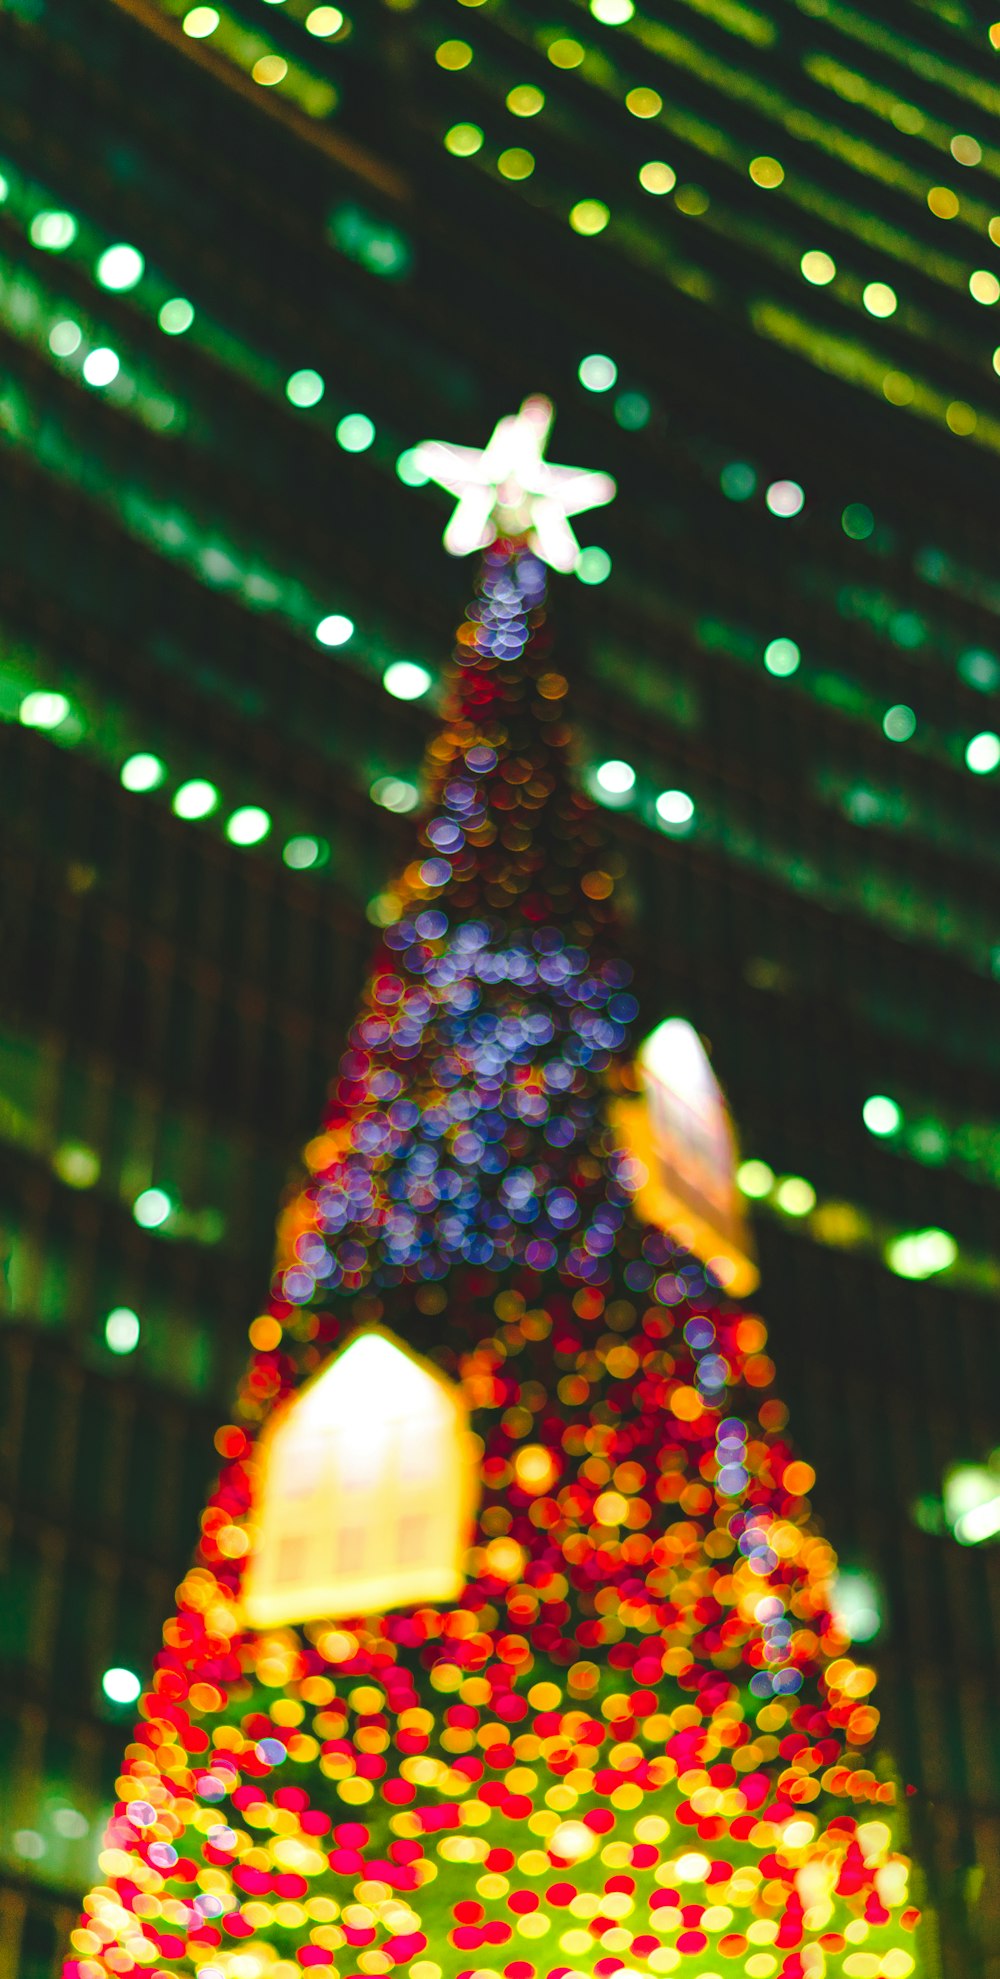 ライト付きクリスマスツリー